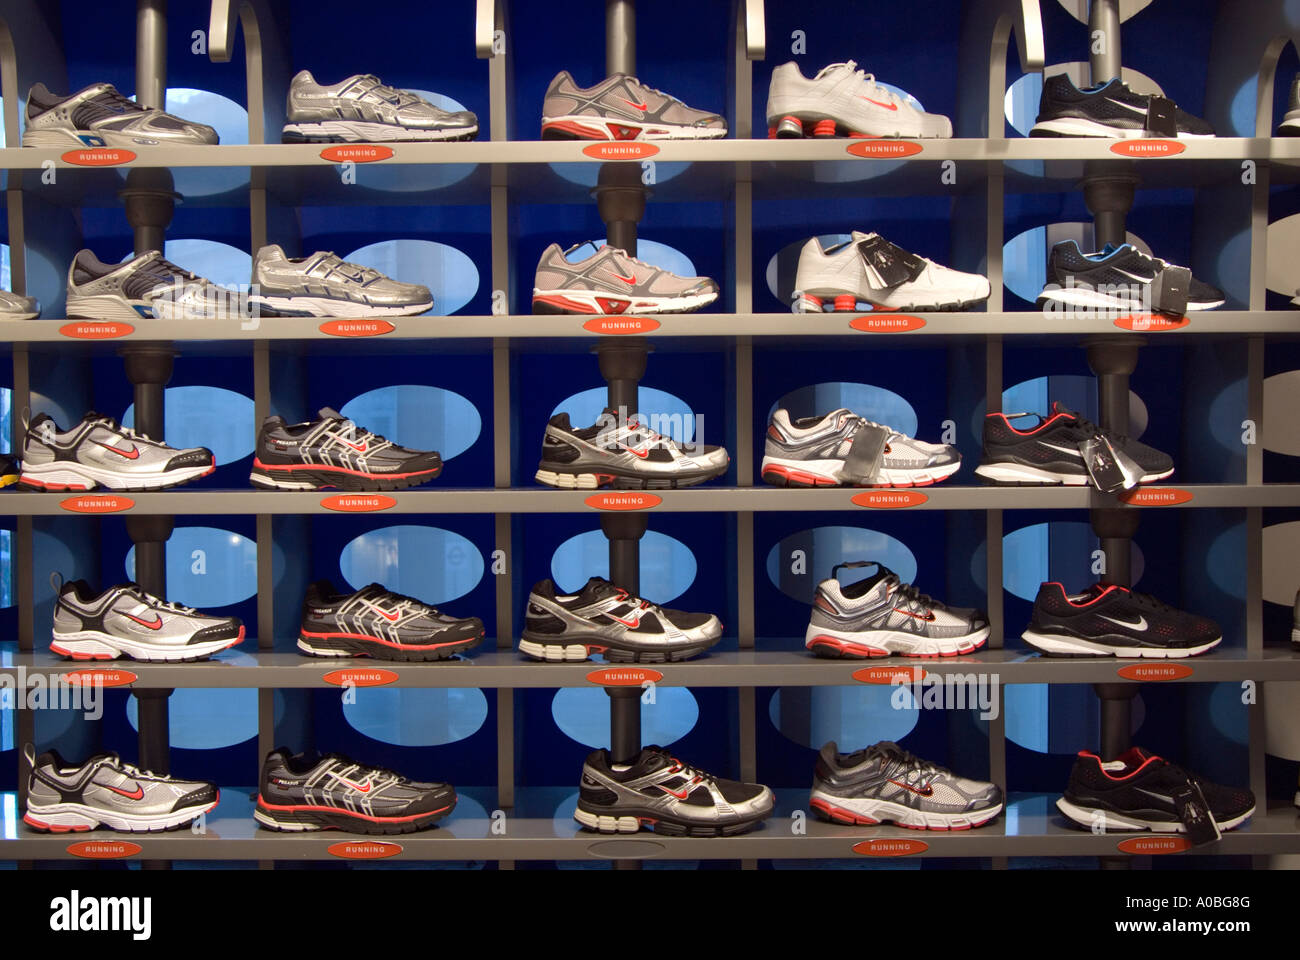 Nike store london immagini e fotografie stock ad alta risoluzione - Alamy